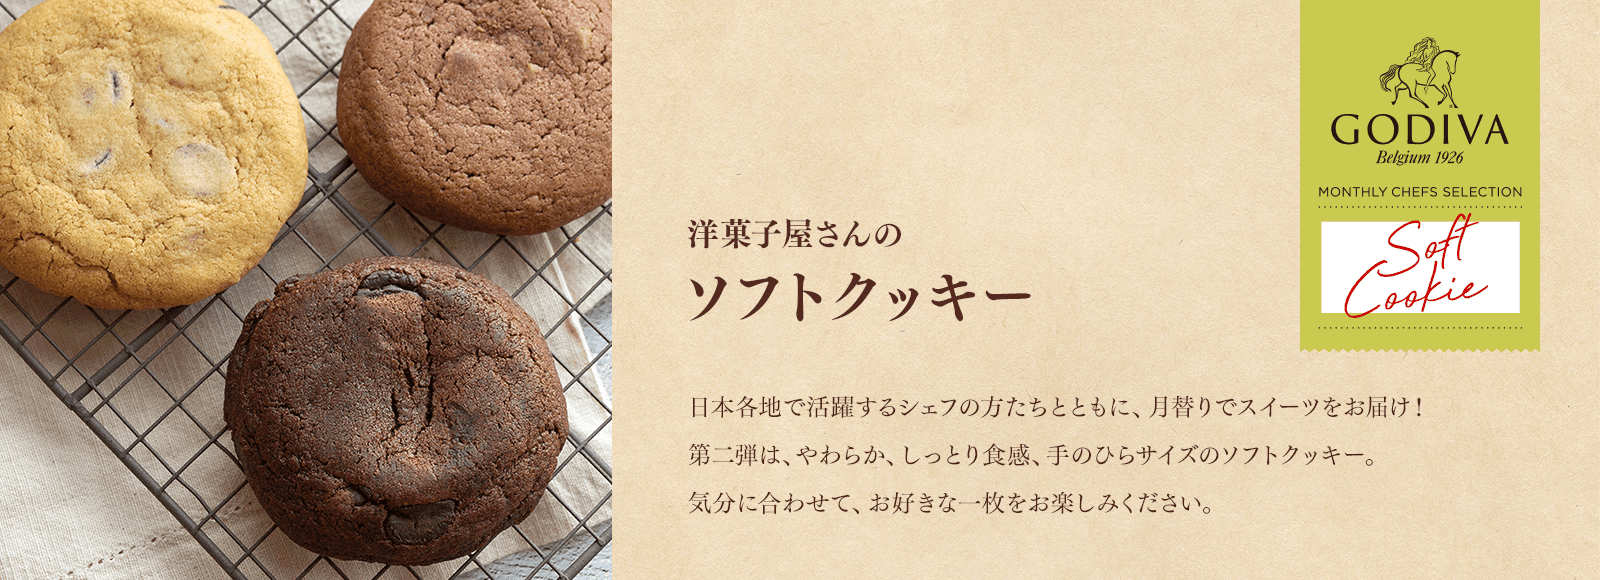 洋菓子屋さんのソフトクッキー